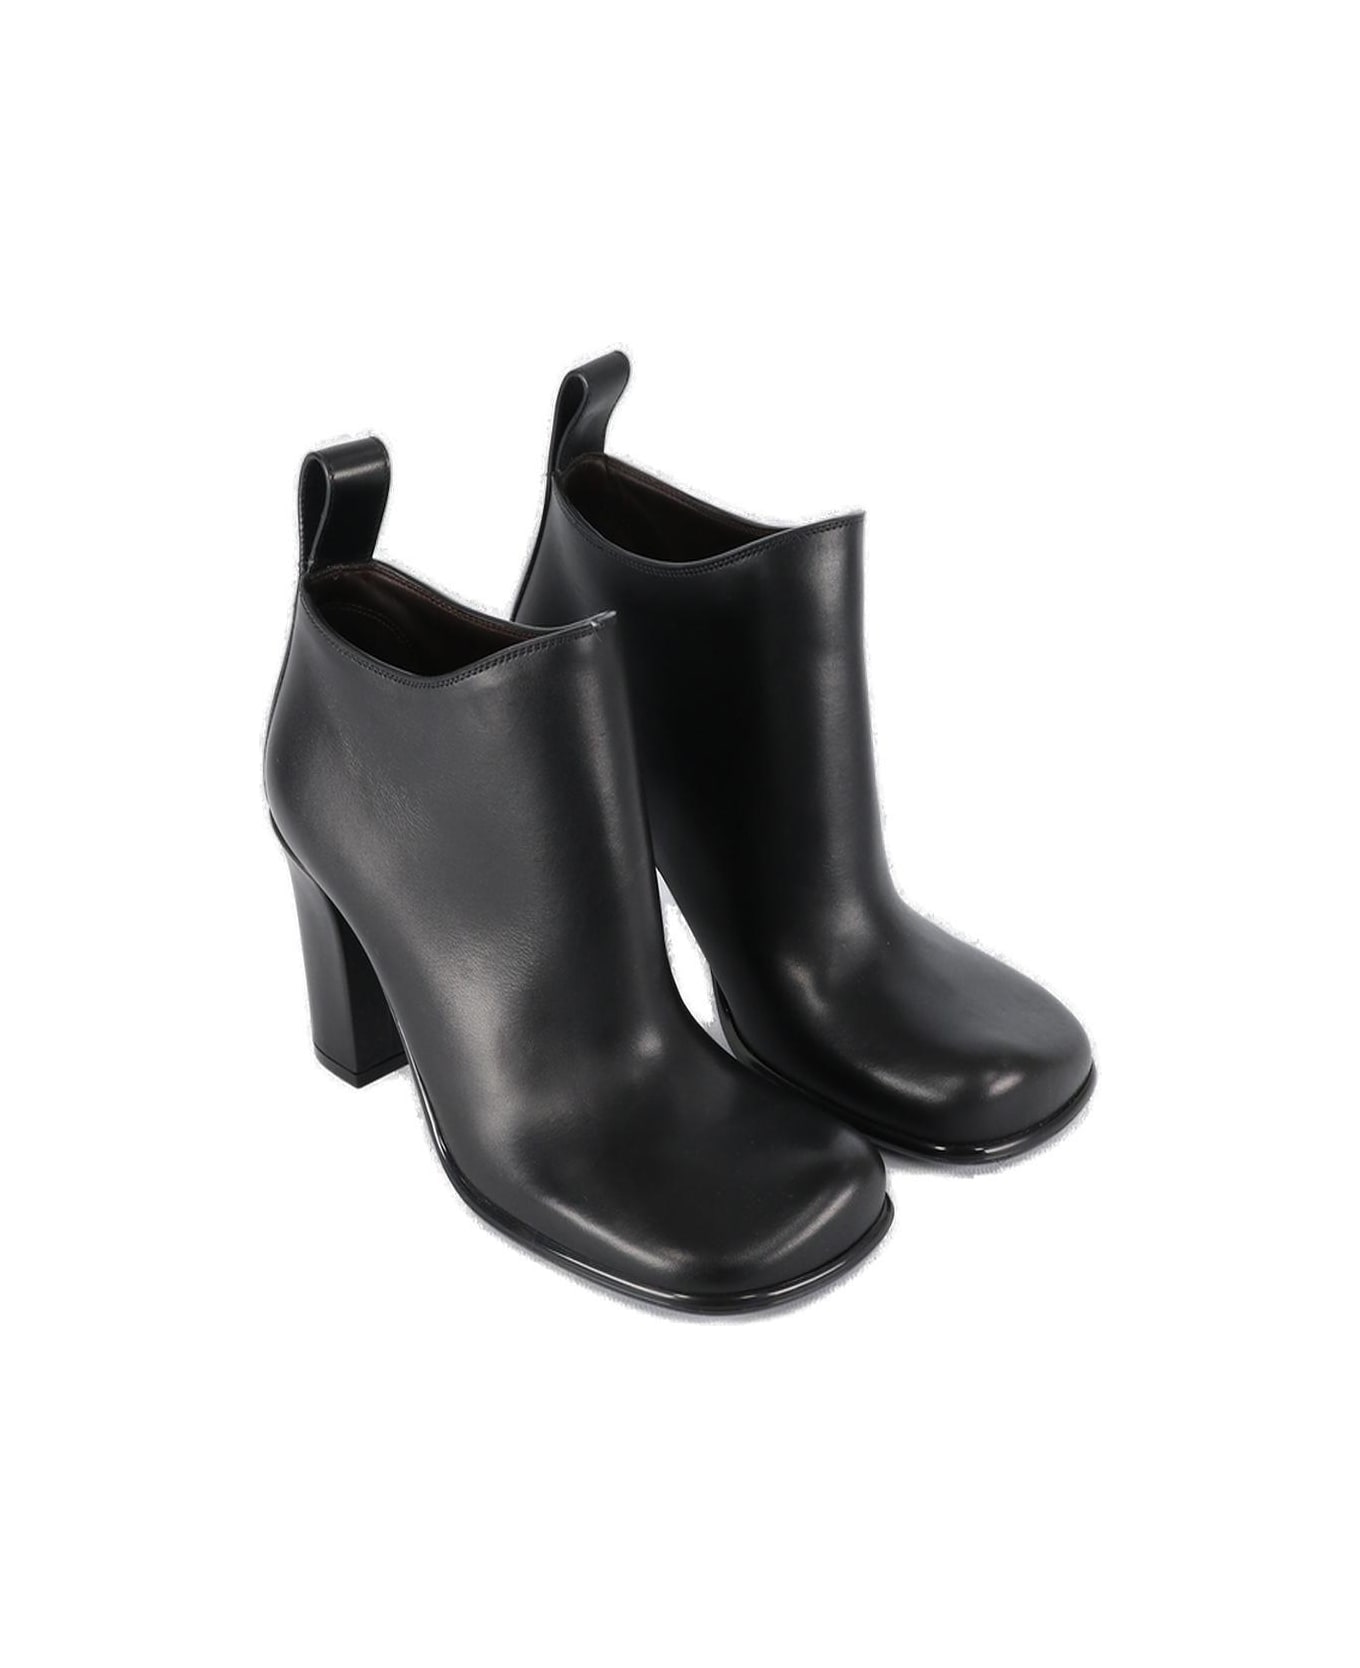 Bottega Veneta Square Toe Ankle Boots - Black ブーツ